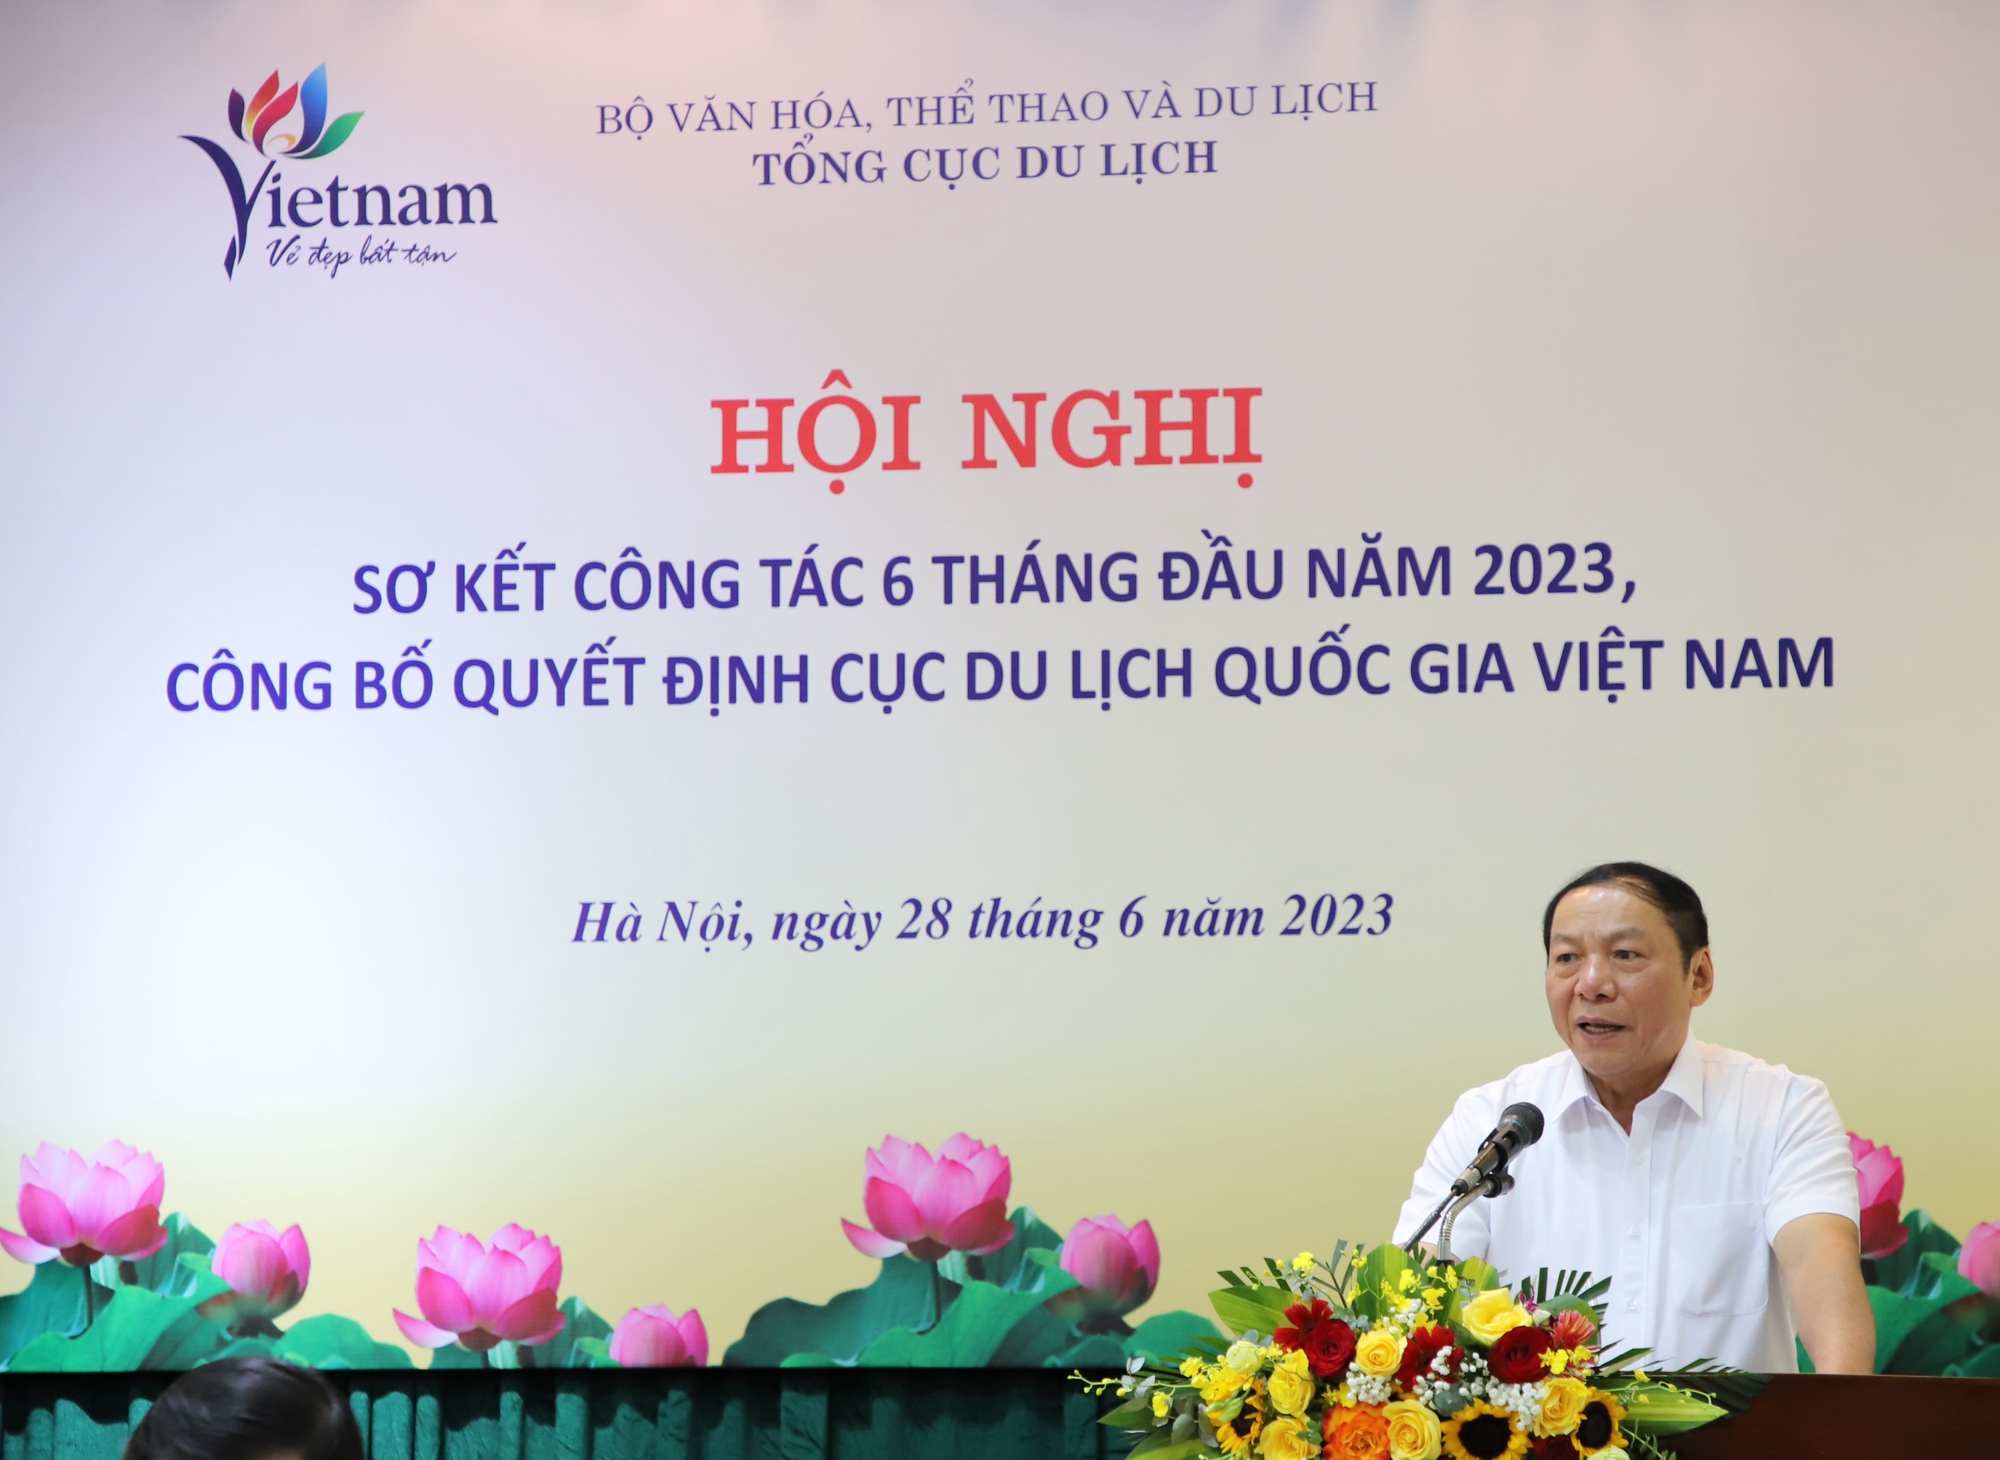 Bộ trưởng Nguyễn Văn Hùng: Ngành Du lịch phải có tư duy mới, cách tiếp cận mới - Ảnh 3.